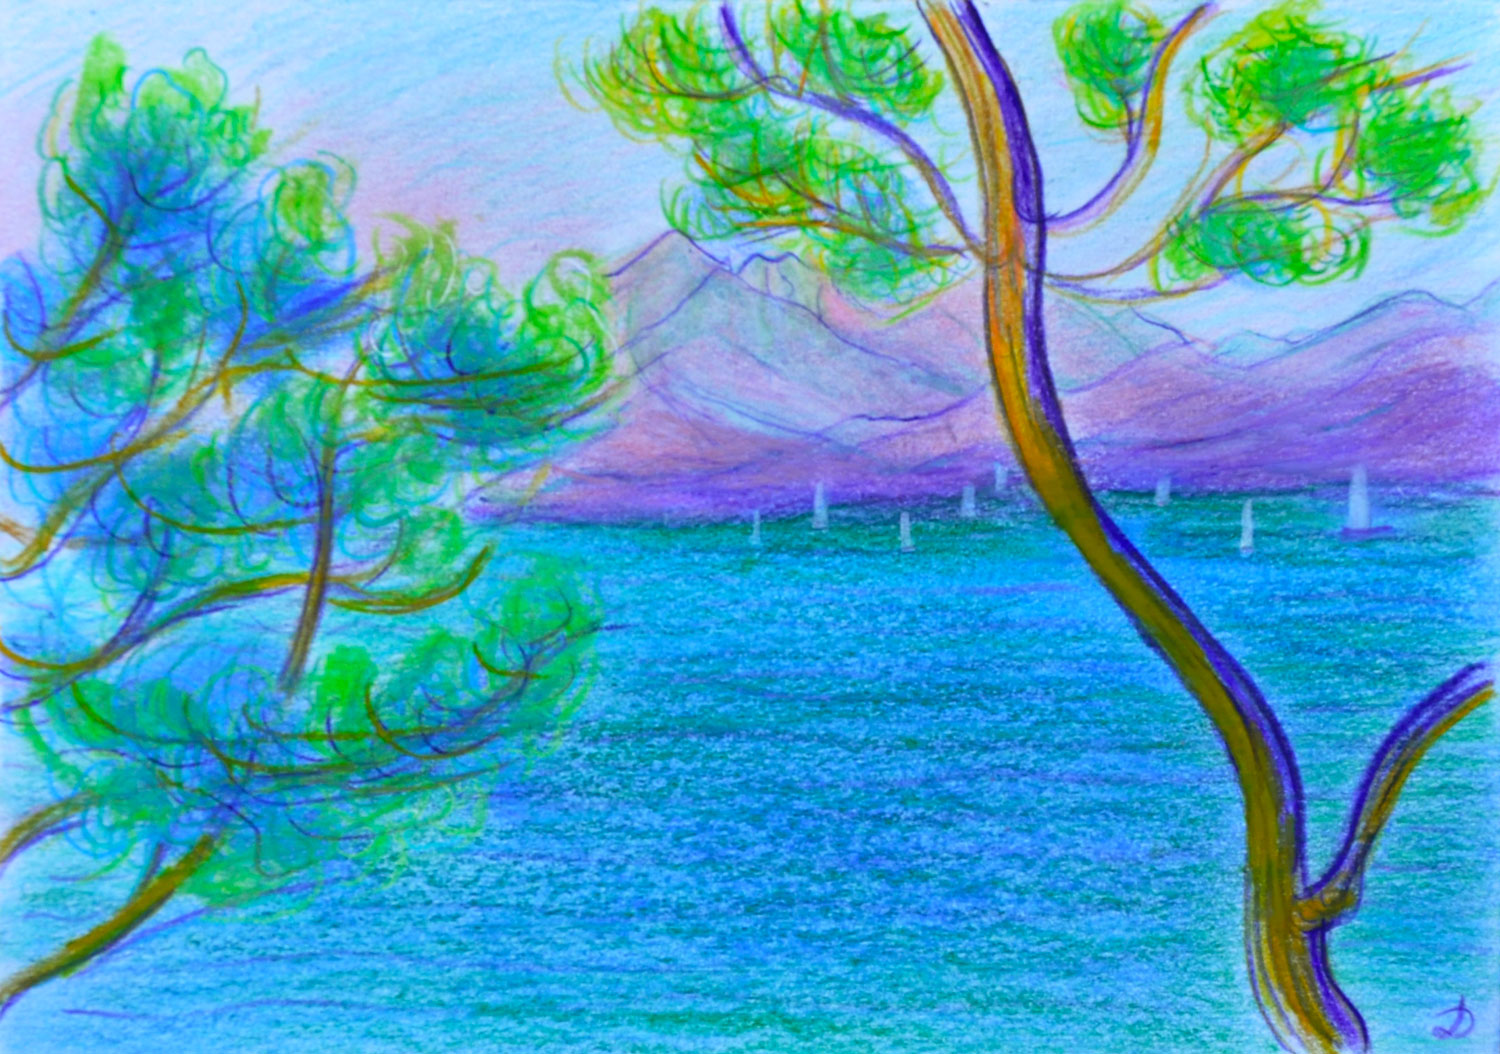 Lac Léman, Montreux, 2. Crayon de couleur et pastel sur papier, 15x21, 2022